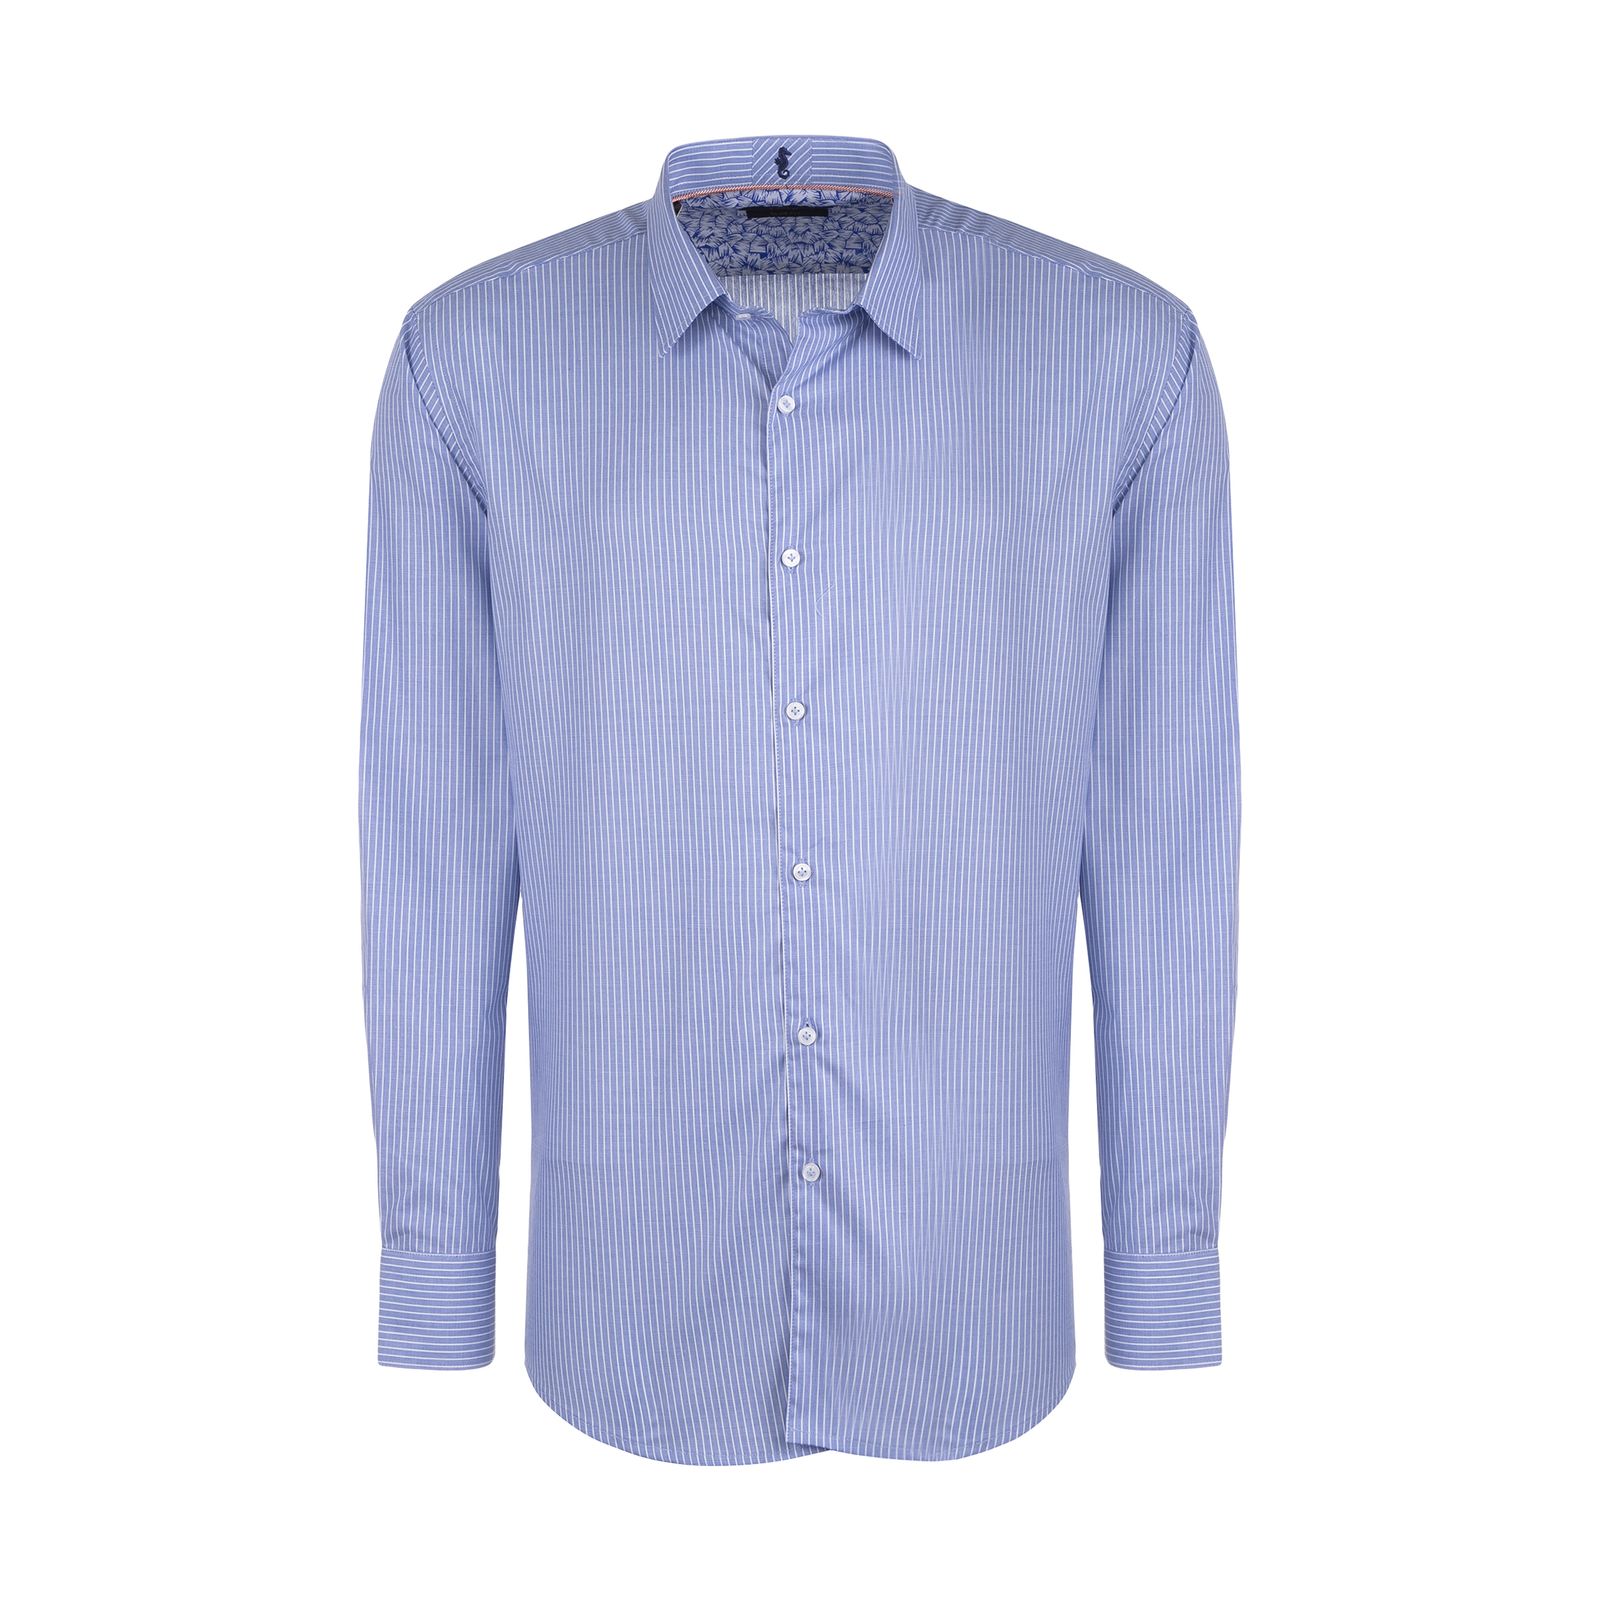 پیراهن آستین بلند مردانه ایکات مدل PST1152333 رنگ آبی -  - 1